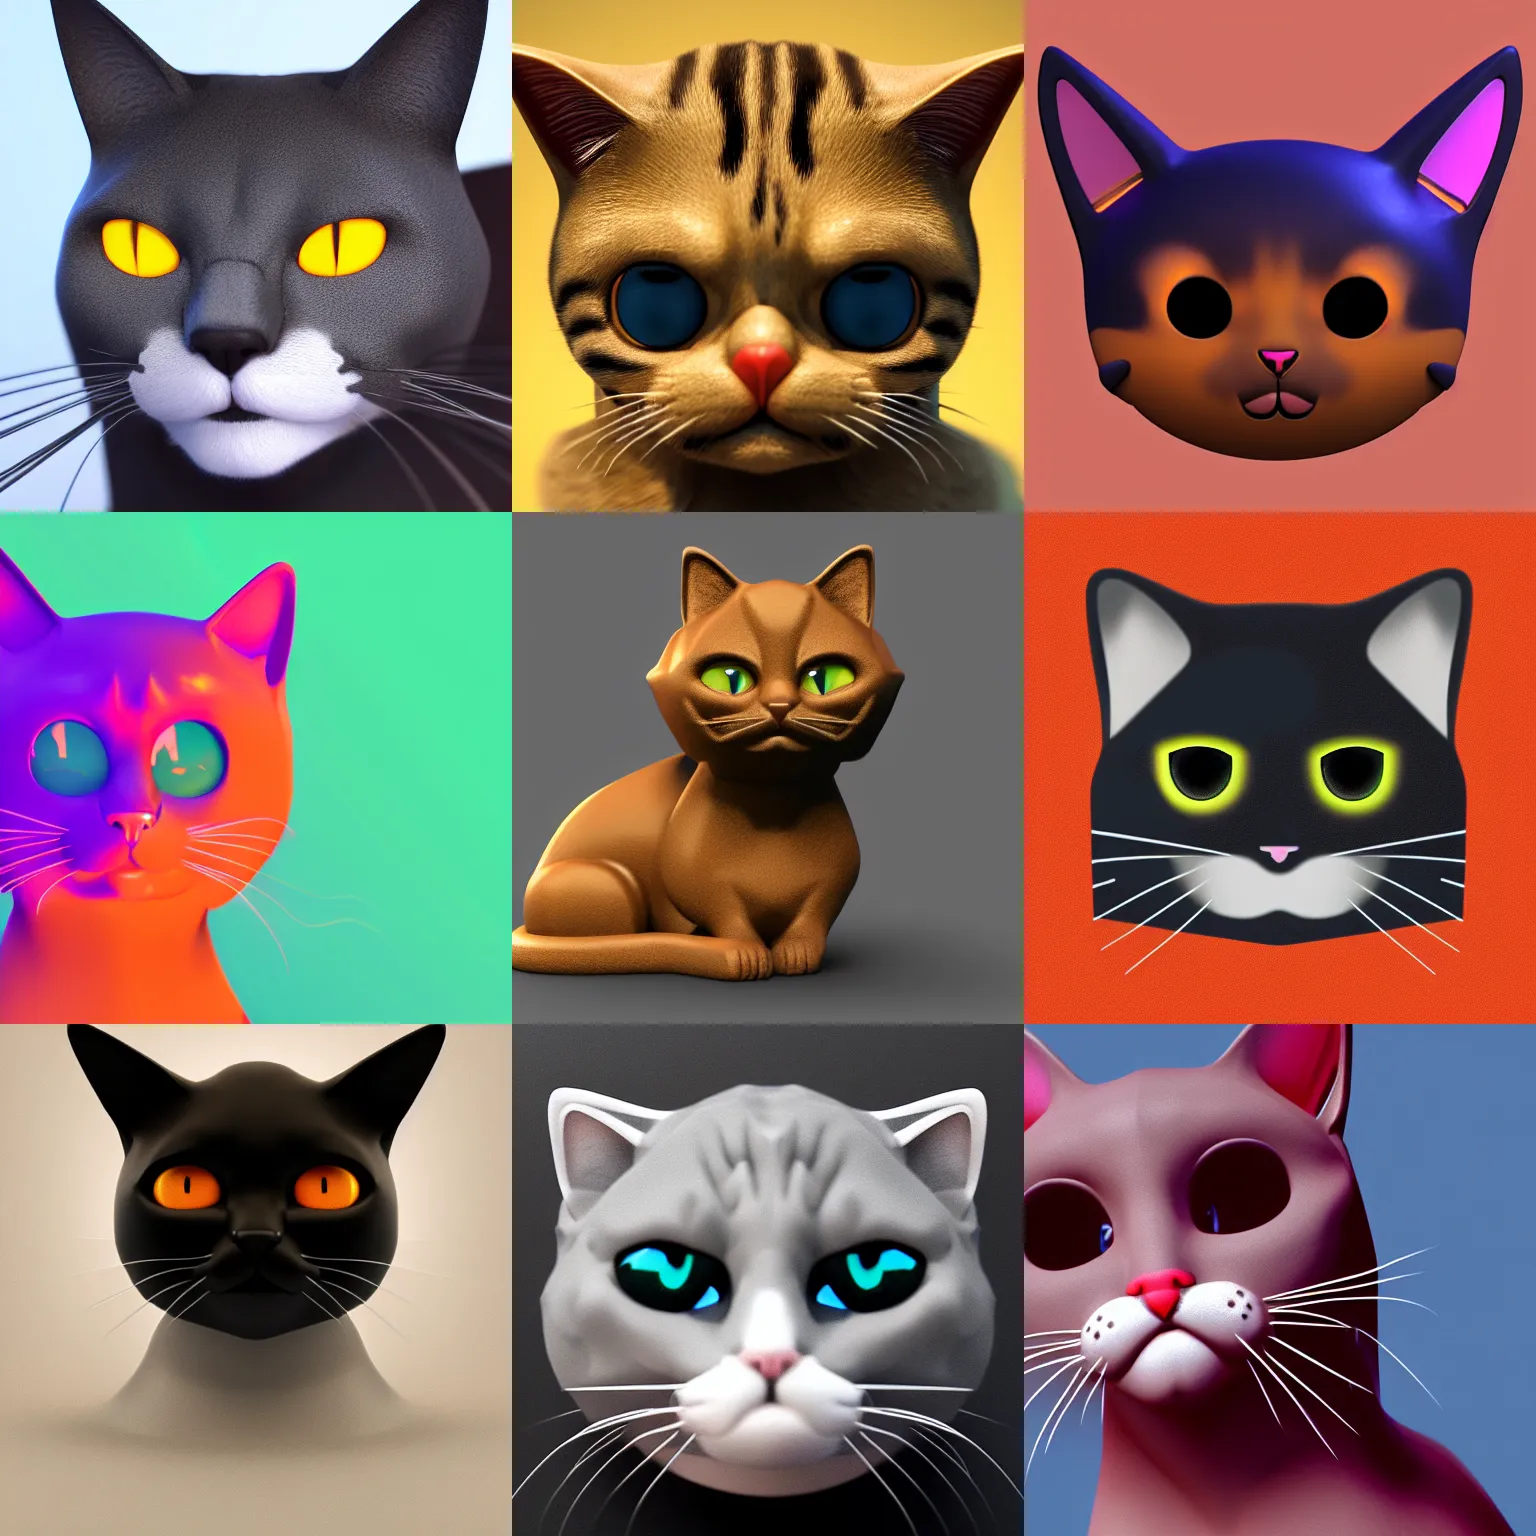 Prompt: a cat software icon, UI design, Material design, 3D, octane render, trending on Artstation, 4K